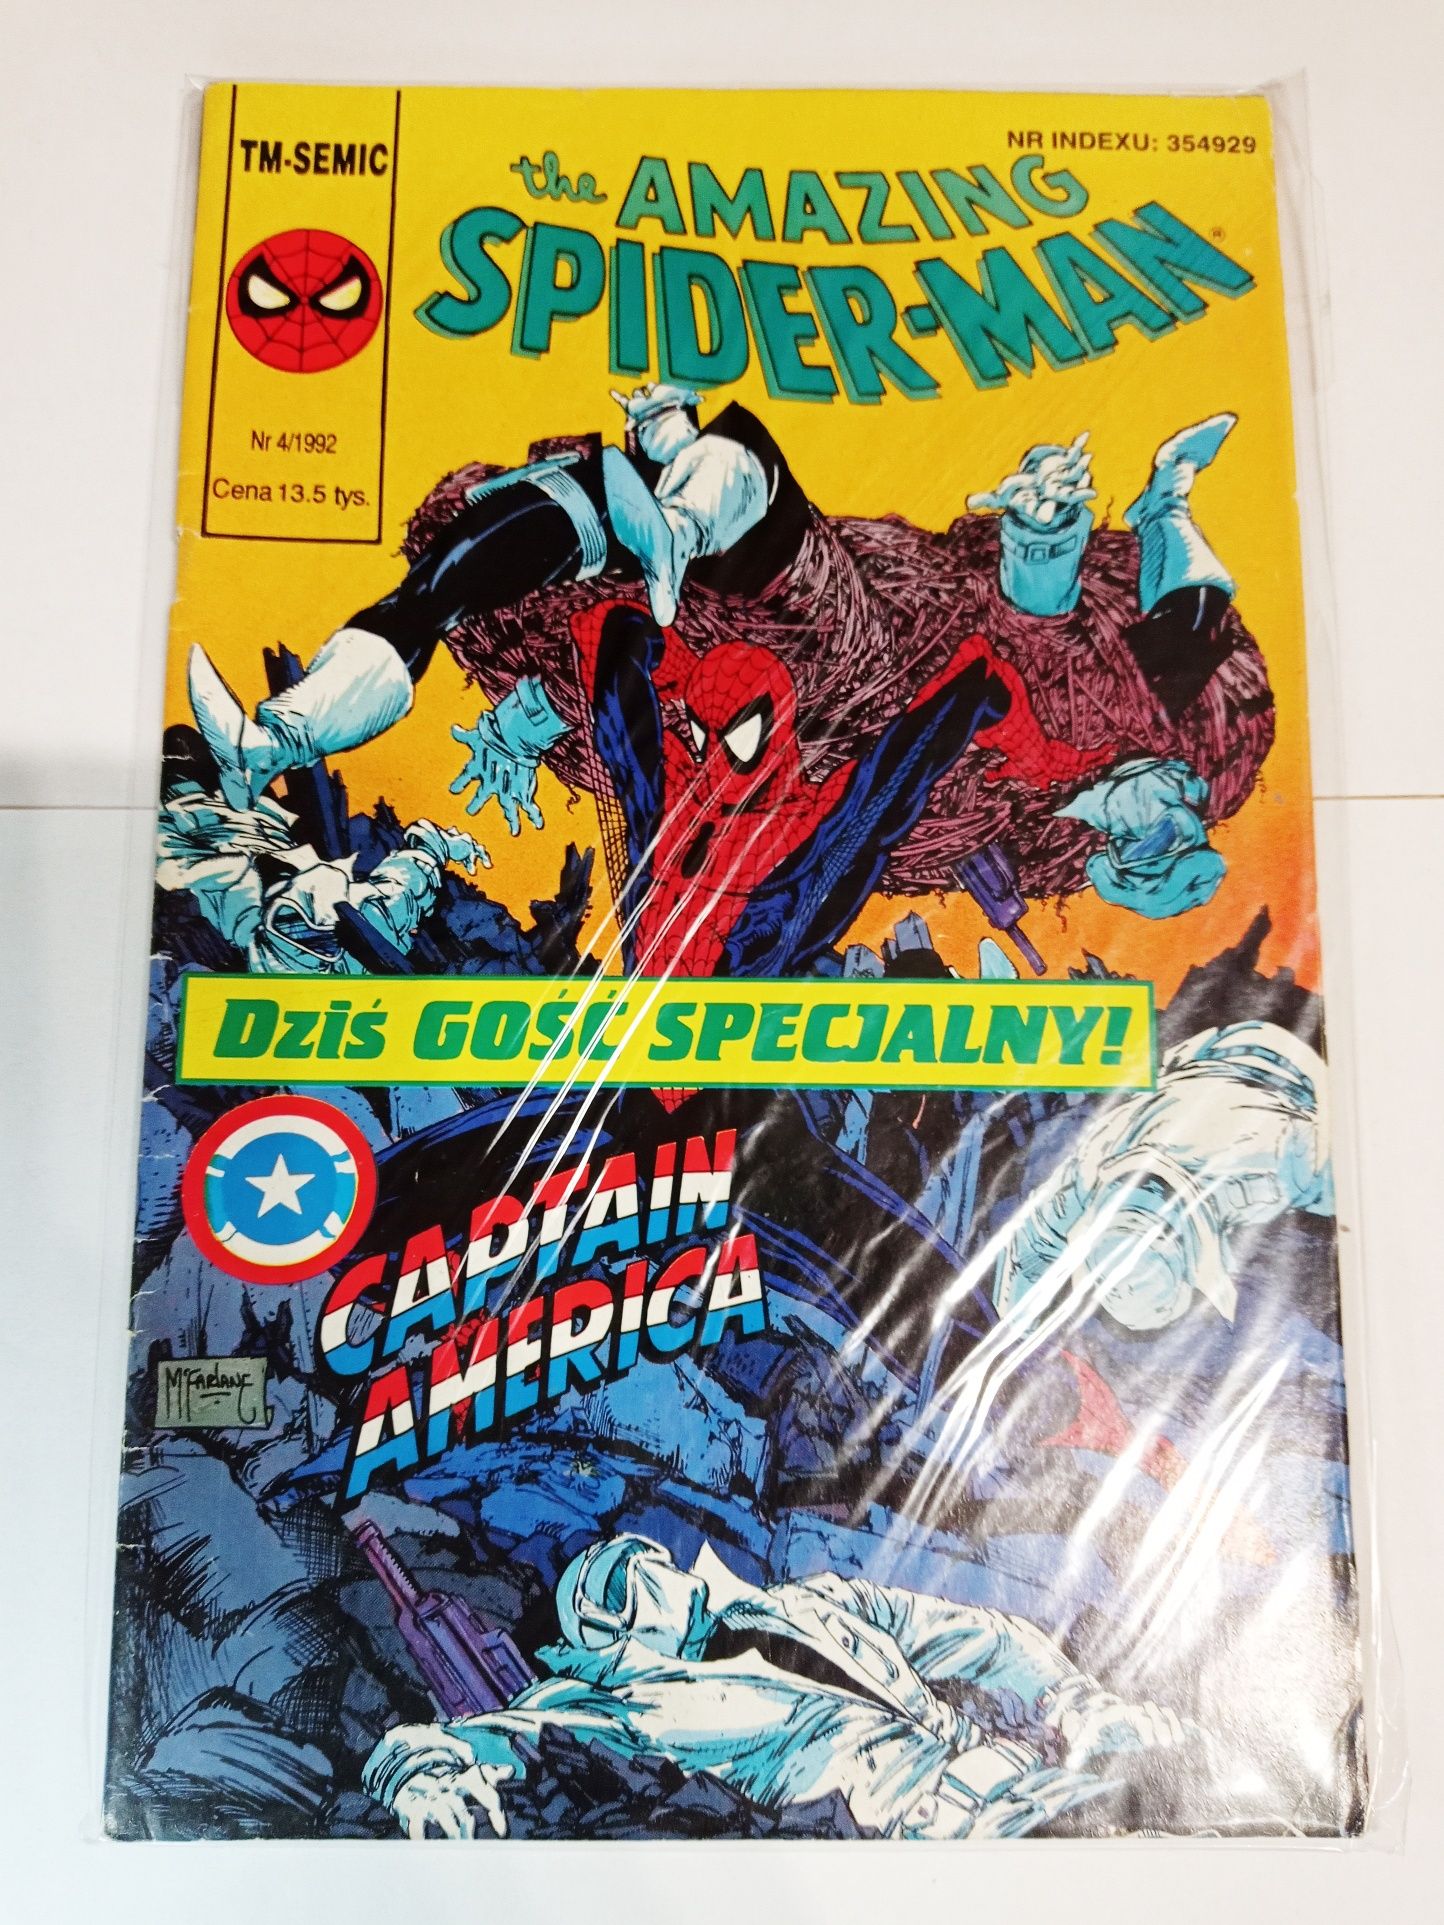 The amazing Spiderman 4/92